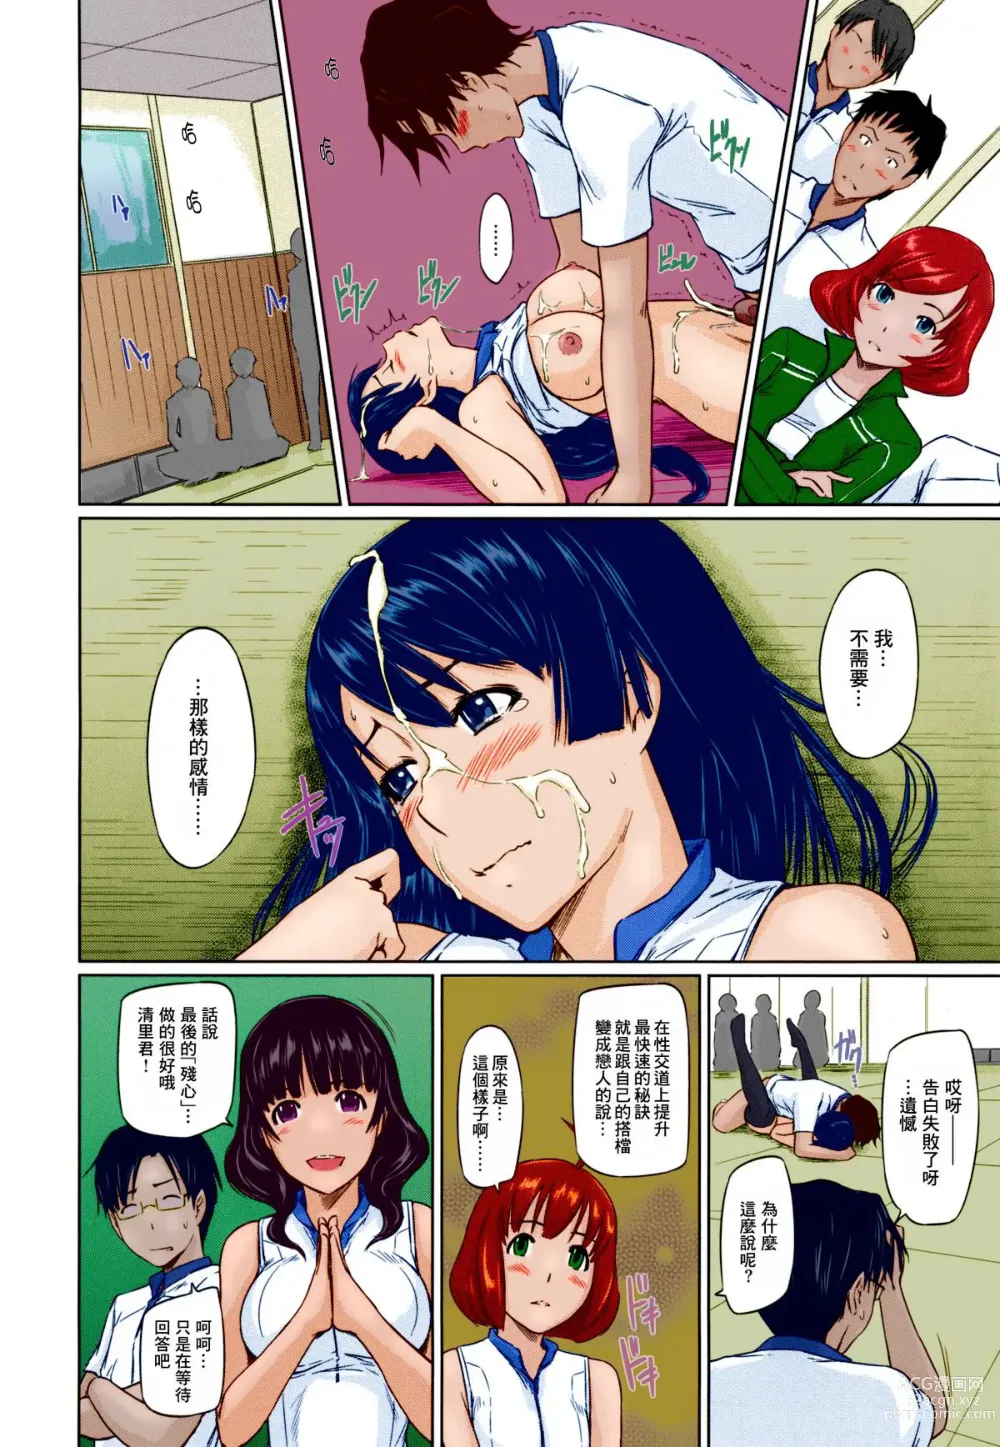 Page 35 of manga Suki ni nattara itchokusen!